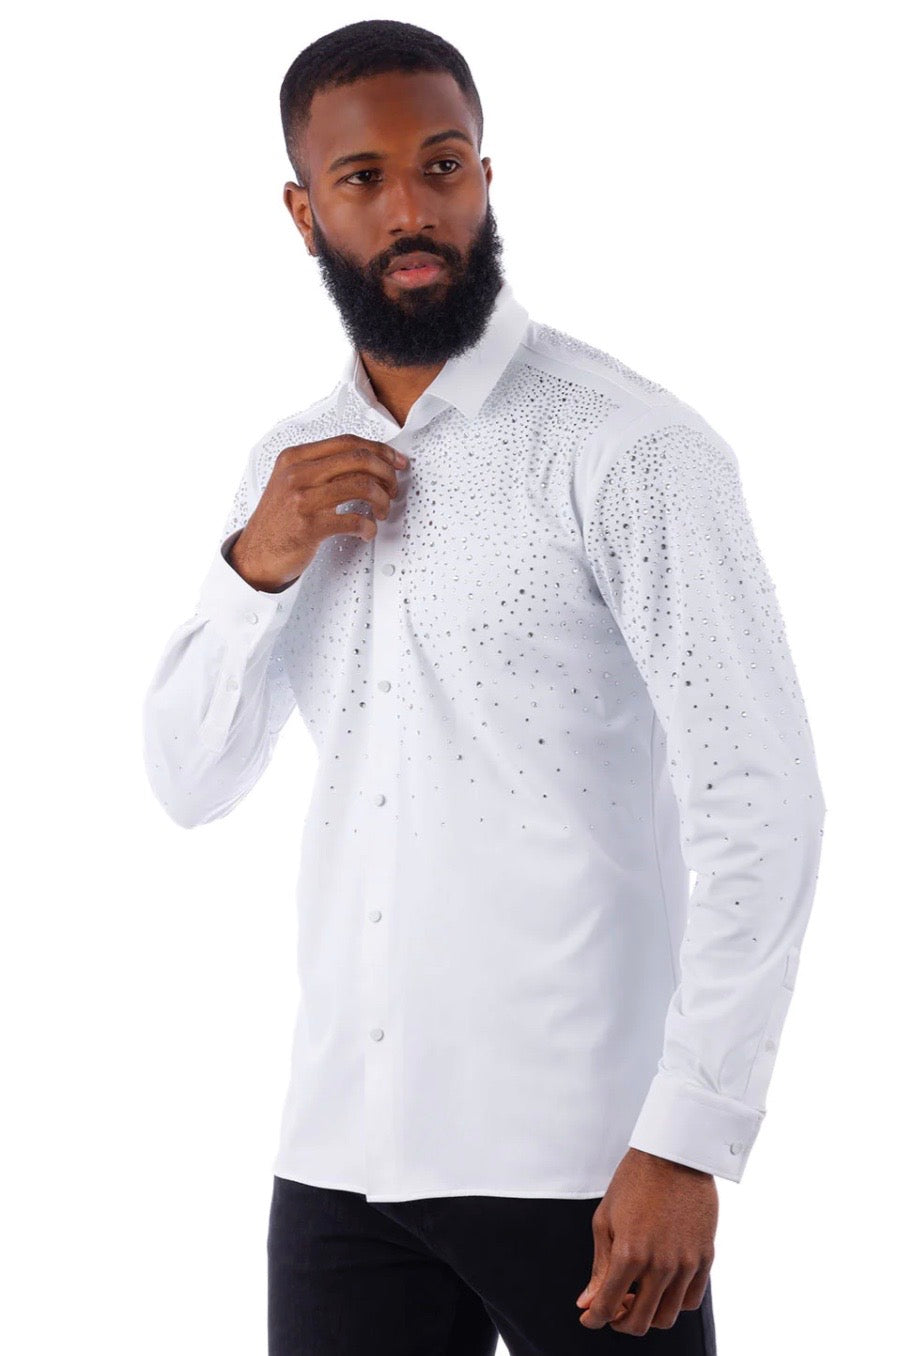 Rhinestone Button Down Shirt White